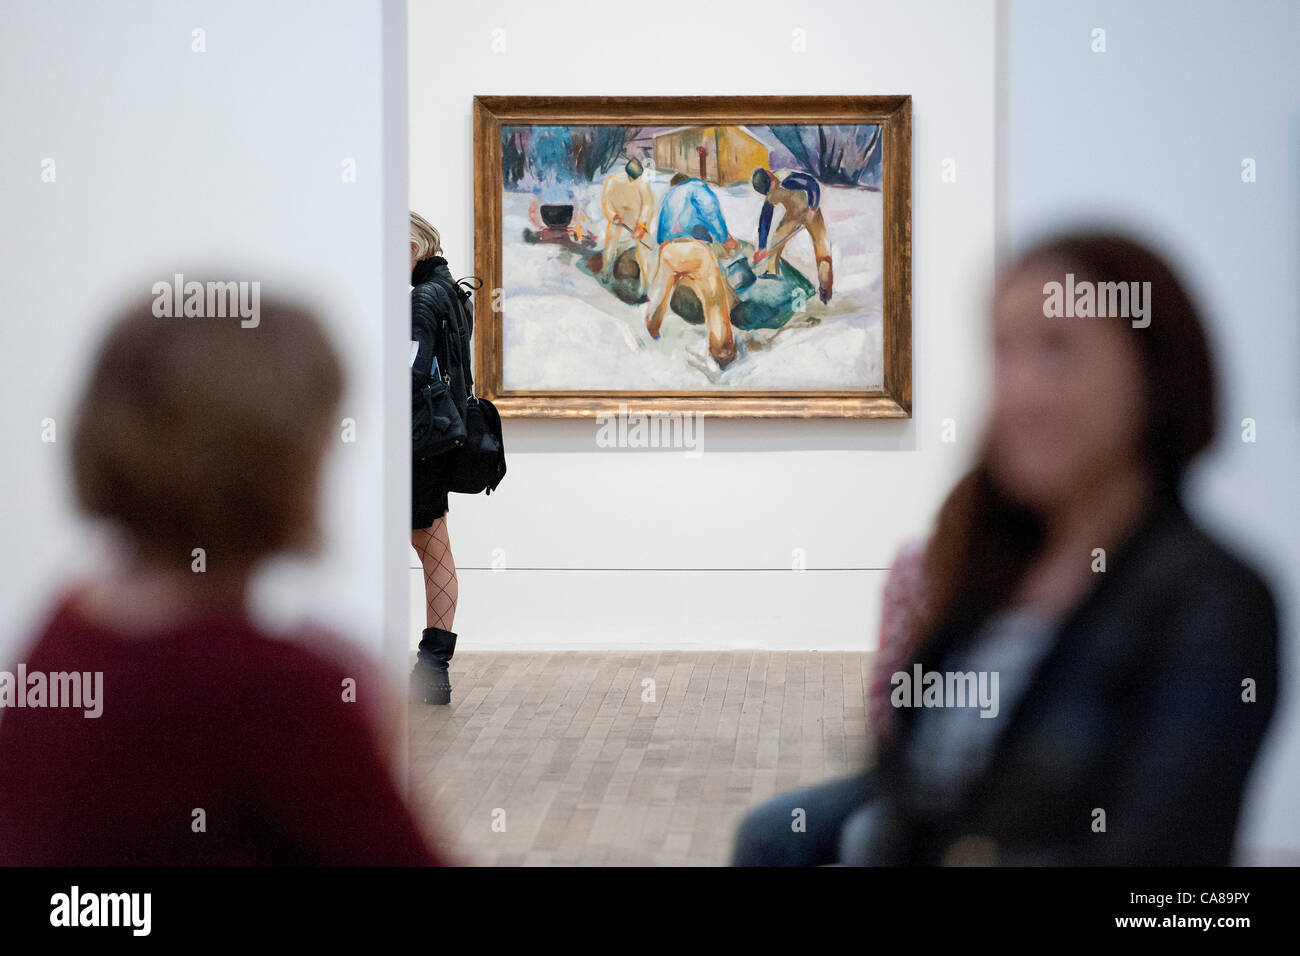 Streetworker im Schnee, 1920.  Edvard Munch: Das moderne Auge, eine Ausstellung von Werk des norwegischen Künstlers in der Tate Modern, London, UK. Die Ausstellung läuft vom 28. Juni bis 14 Oktober. 26. Juni 2012.  (Verwendung sollte diese Ausstellung erwähnen) Stockfoto